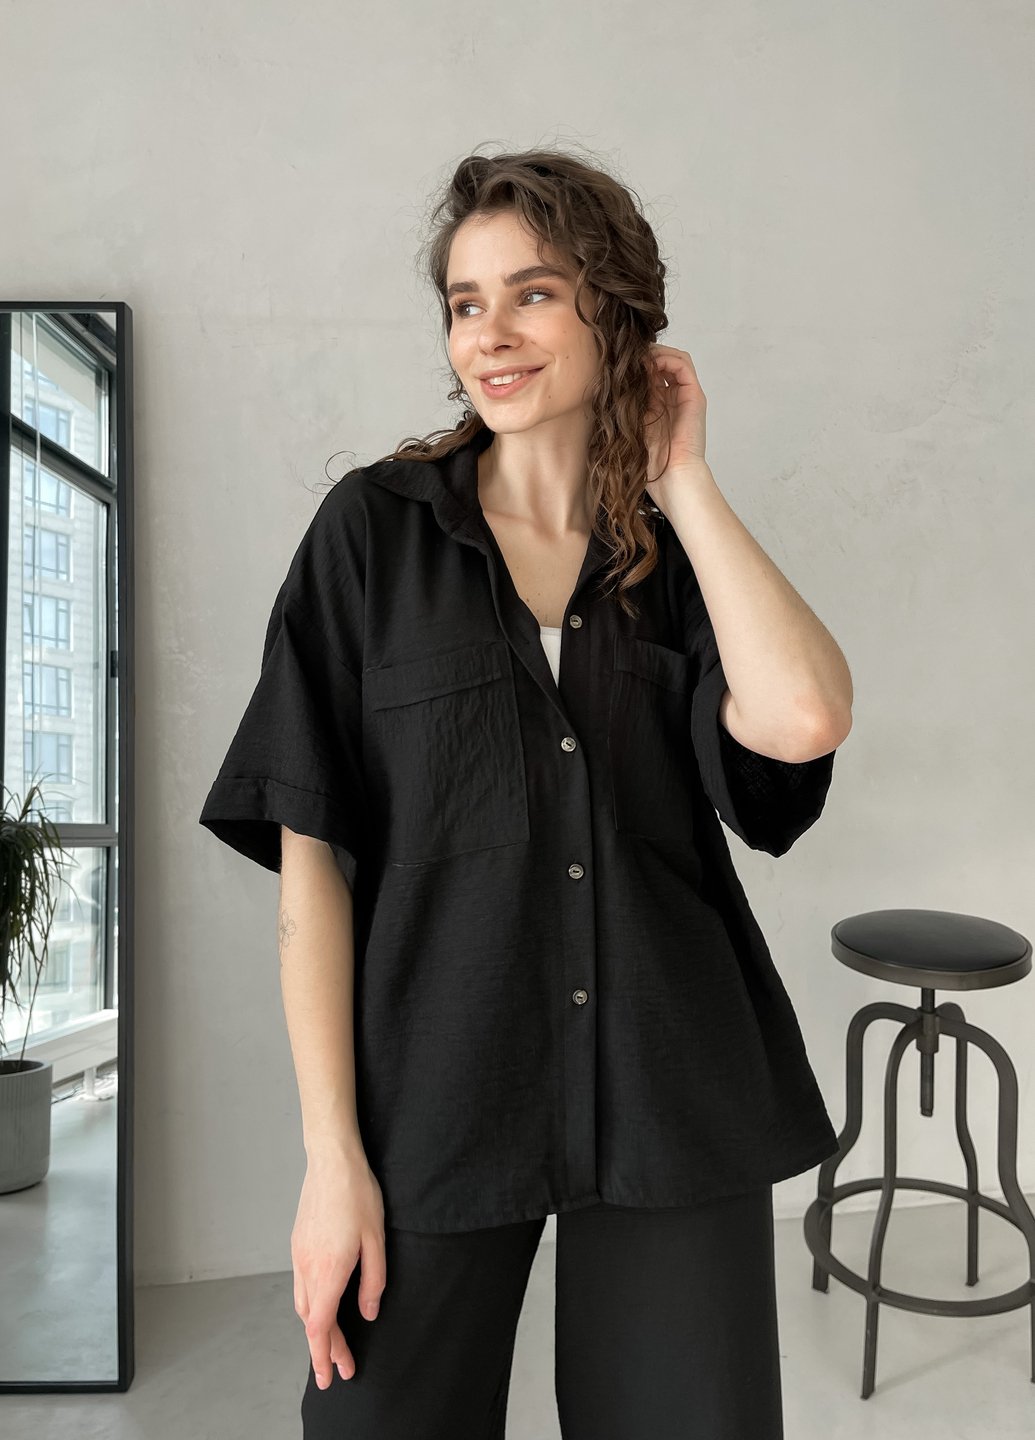 Купить Женская льняная рубашка с коротким рукавом черная Merlini Фриули 200000141, размер 54-56 в интернет-магазине